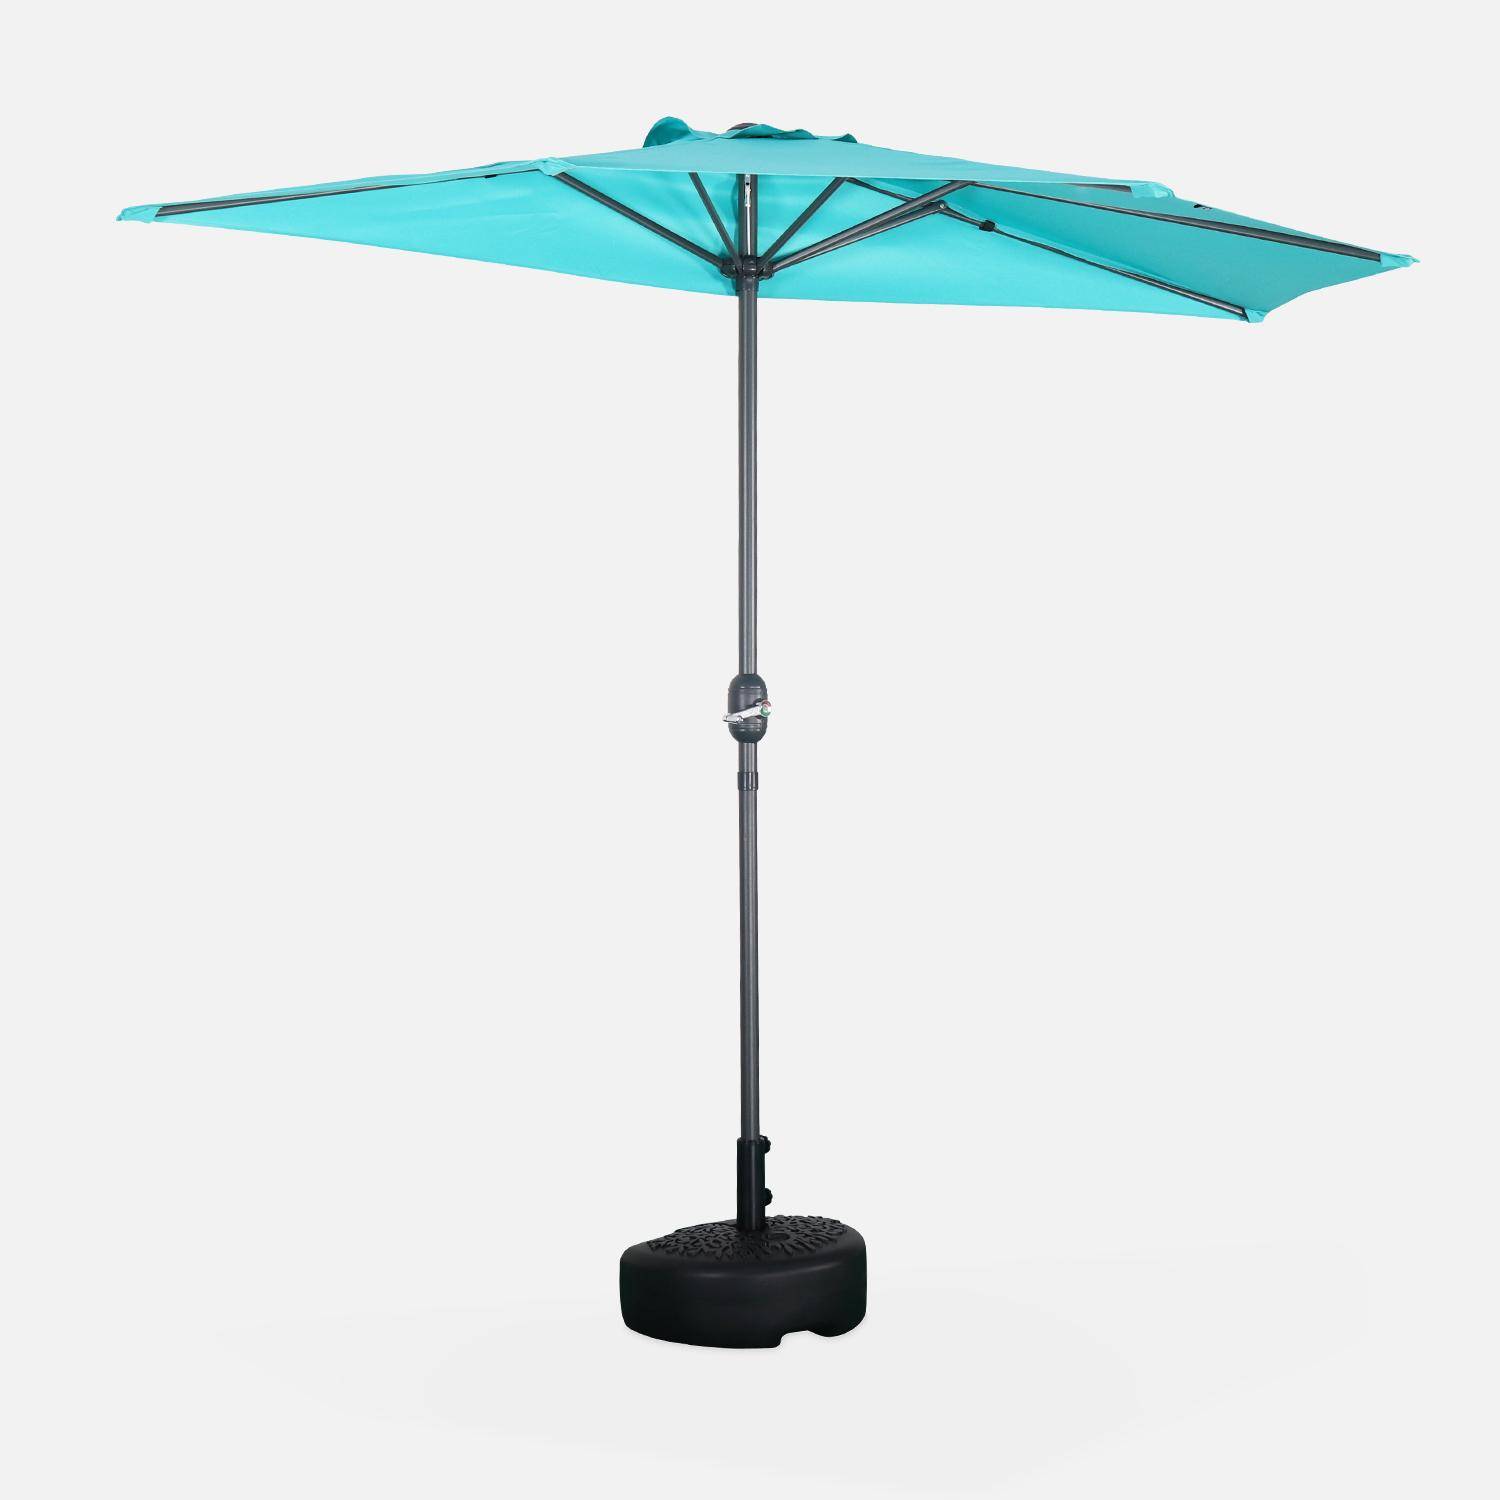  Parasol para balcón Ø250cm  – CALVI – Pequeño parasol recto, mástil en aluminio con manivela, tela color turquesa Photo1